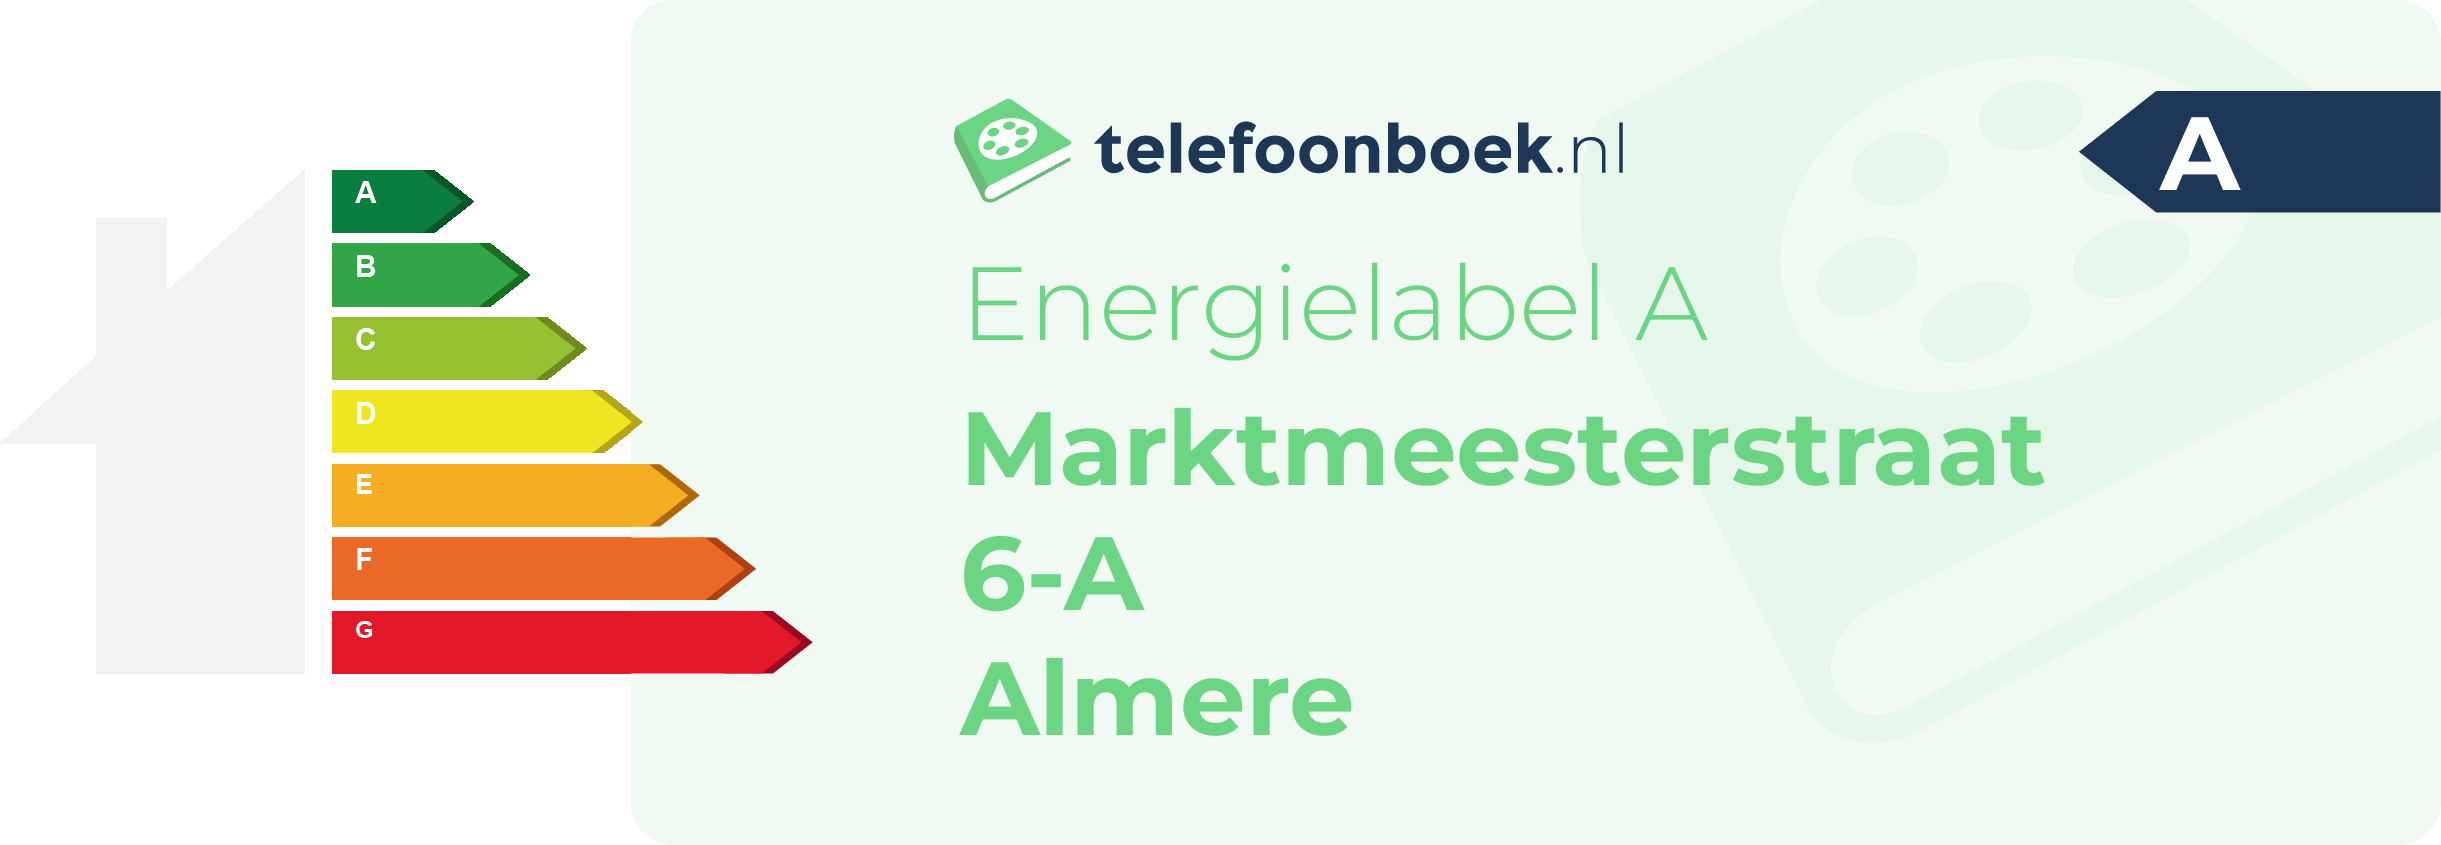 Energielabel Marktmeesterstraat 6-A Almere